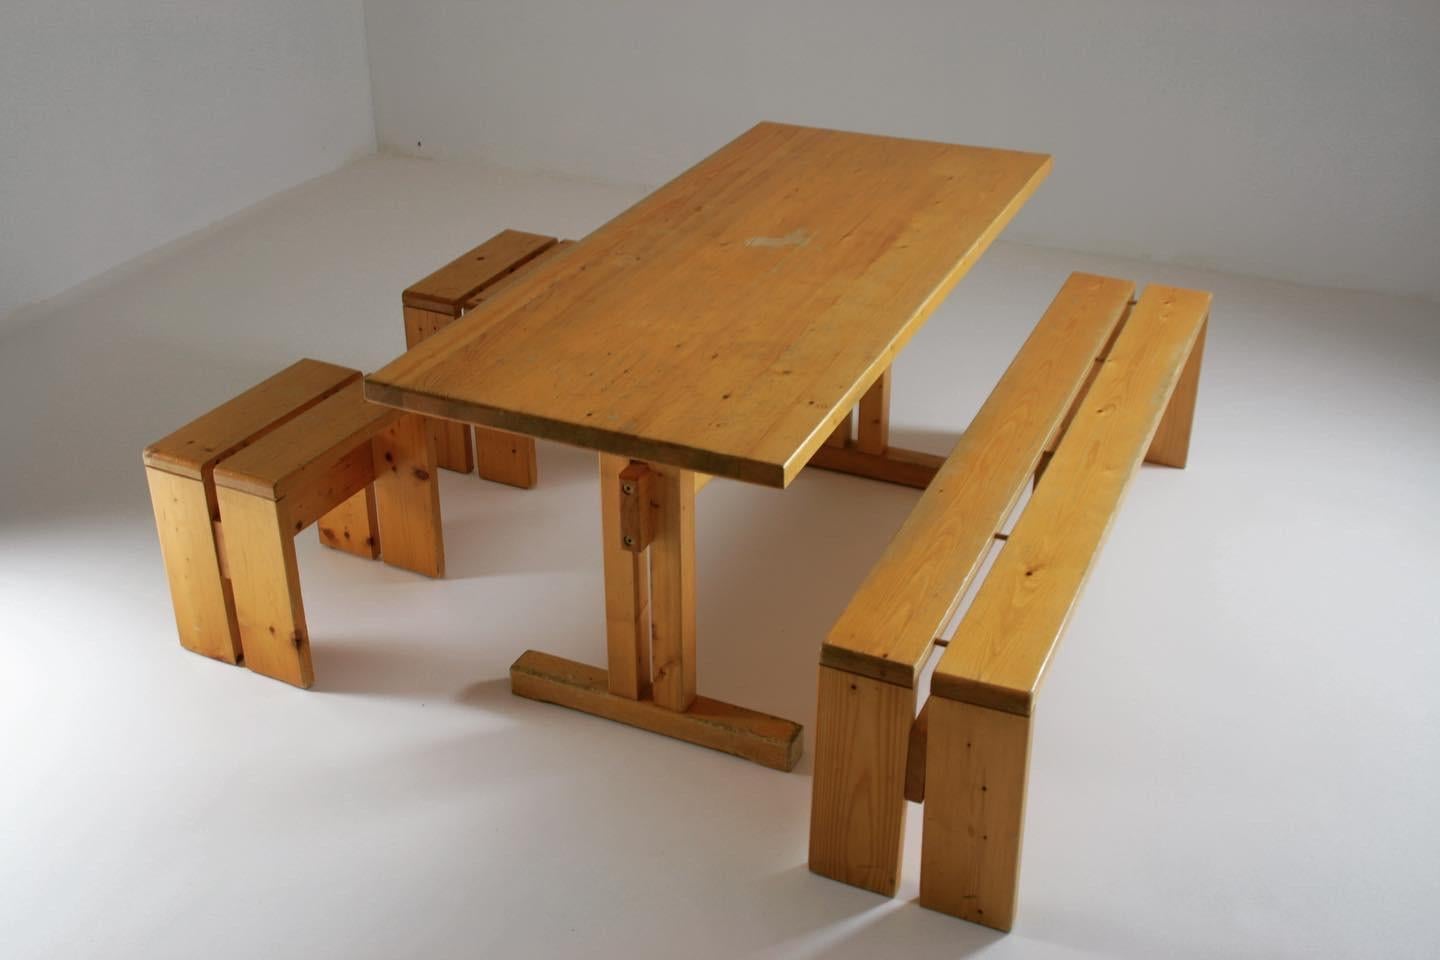 Großer Tisch und große Bank, begleitet von 2 Hockern von Les Acrs, ausgewählt von Charlotte Perriand, Frankreich, aus den 60er Jahren.

Kiefernstruktur in gutem Zustand mit Gebrauchsspuren. 

Maße des Tisches: L155 X T67 X H70 cm.
Abmessungen der